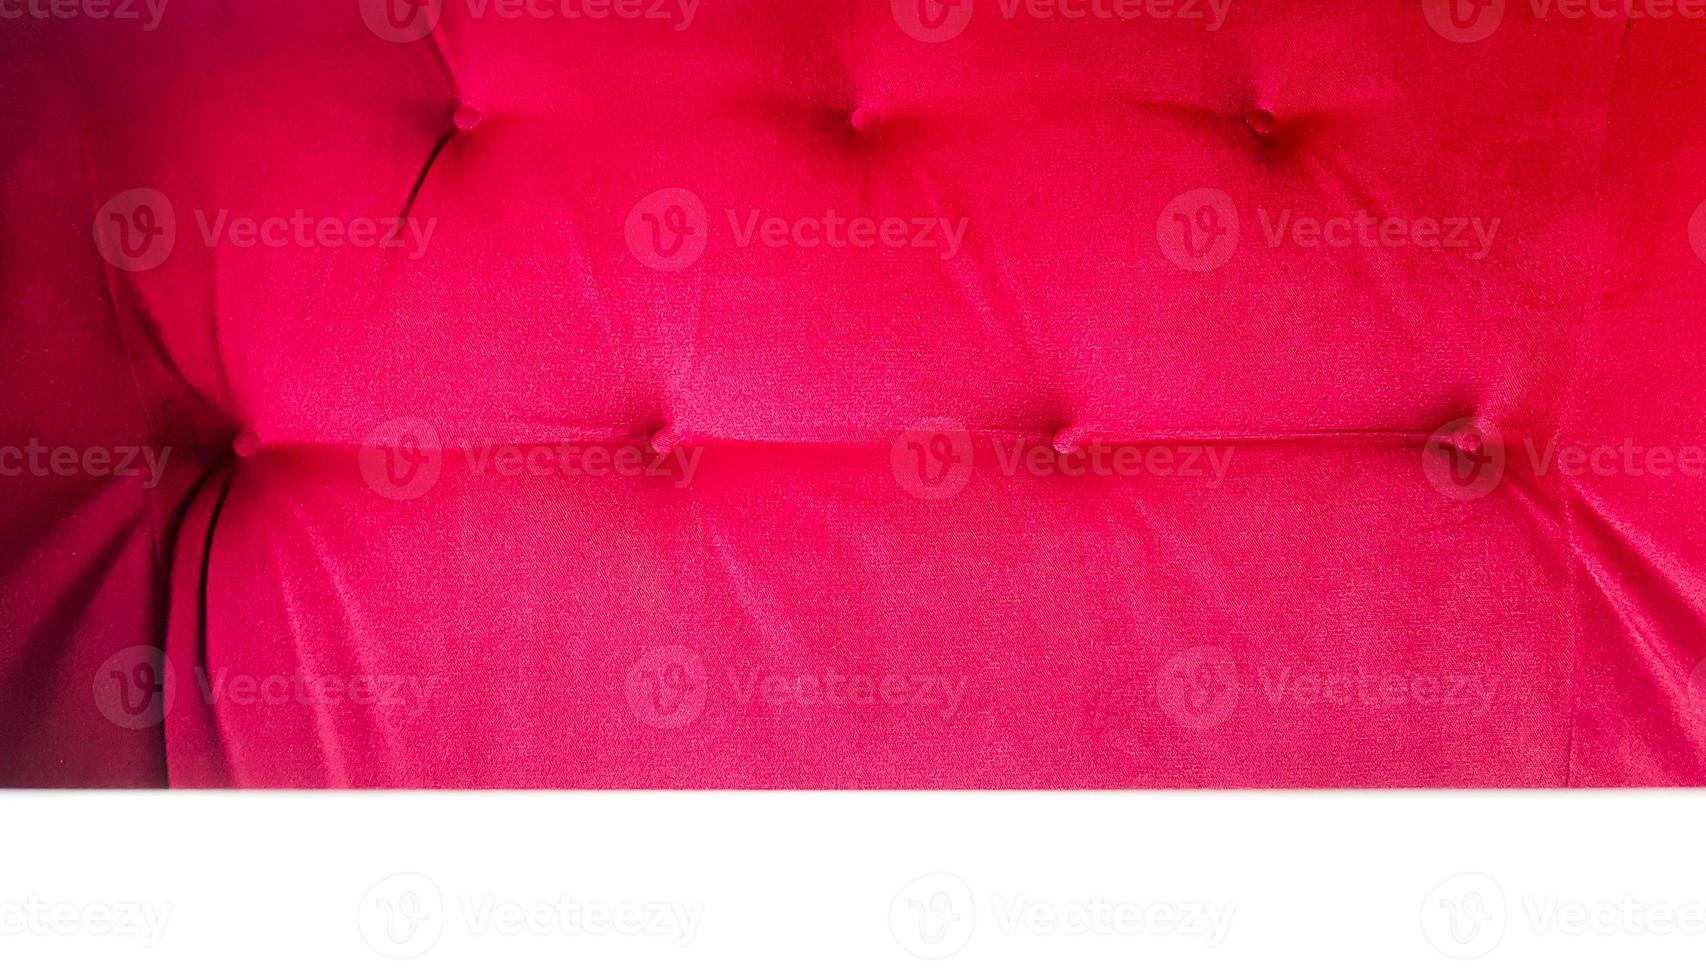 Rückseite eines roten Sofas. roter Stoff Textur Hintergrund, Chesterfield-Stil Dekoration mit Knöpfen, Retro-Stoff. Retro-rautenförmiger weicher Stoff mit Knöpfen verziert. roter Samthintergrund foto